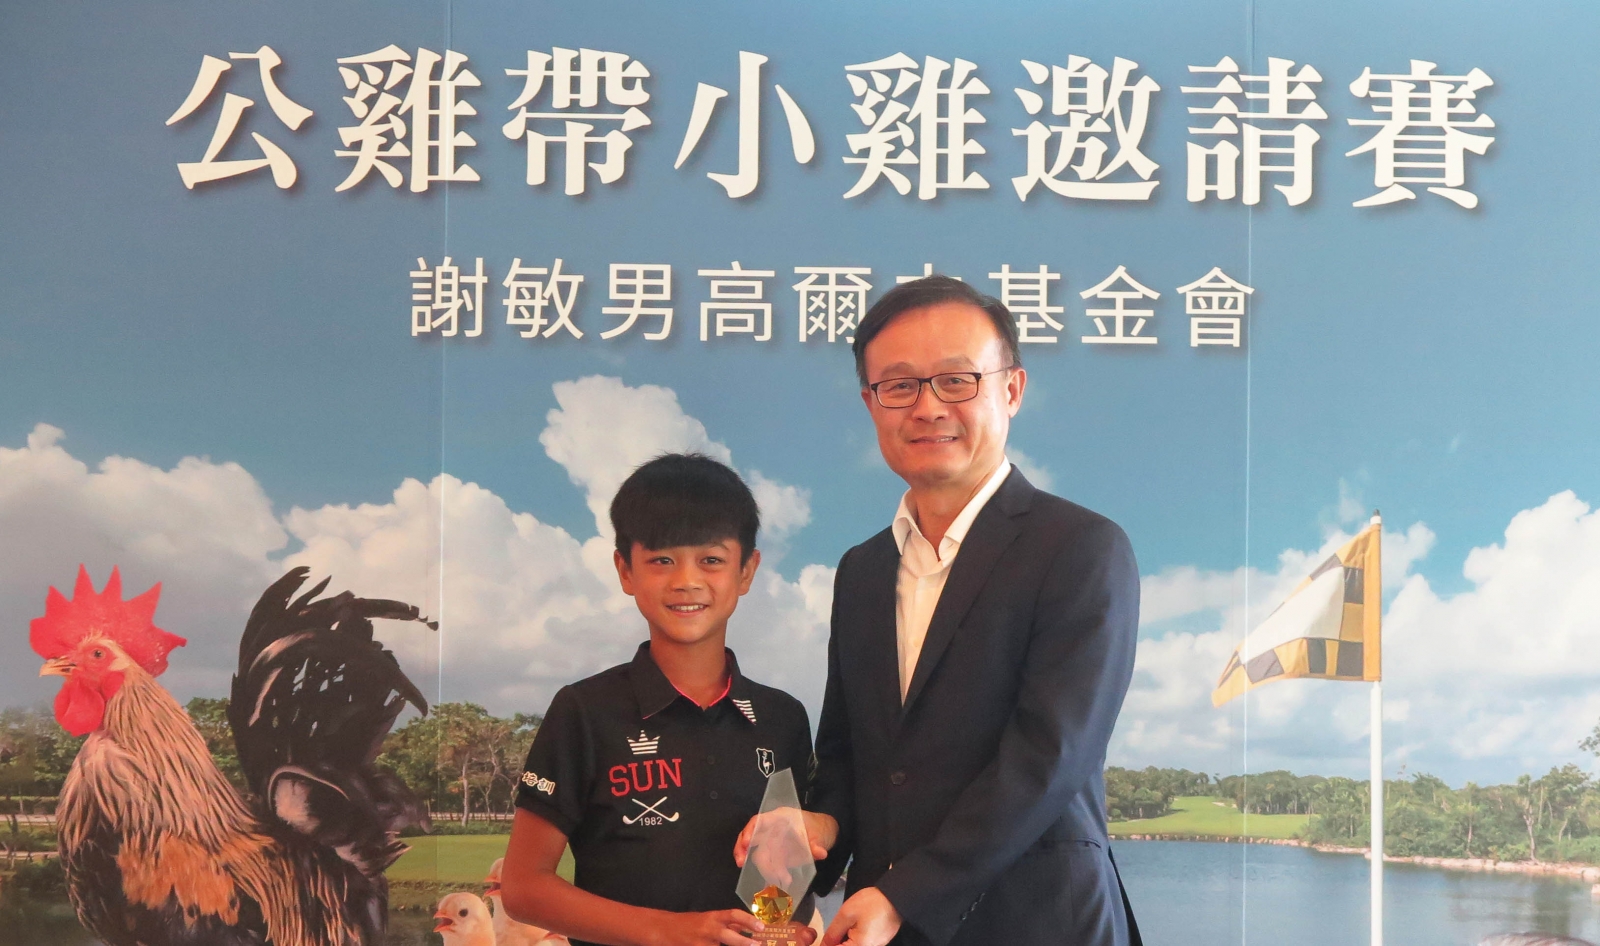 11歲謝承洧贏得生平第1個職業賽業餘冠軍 ，感謝長春老師指導